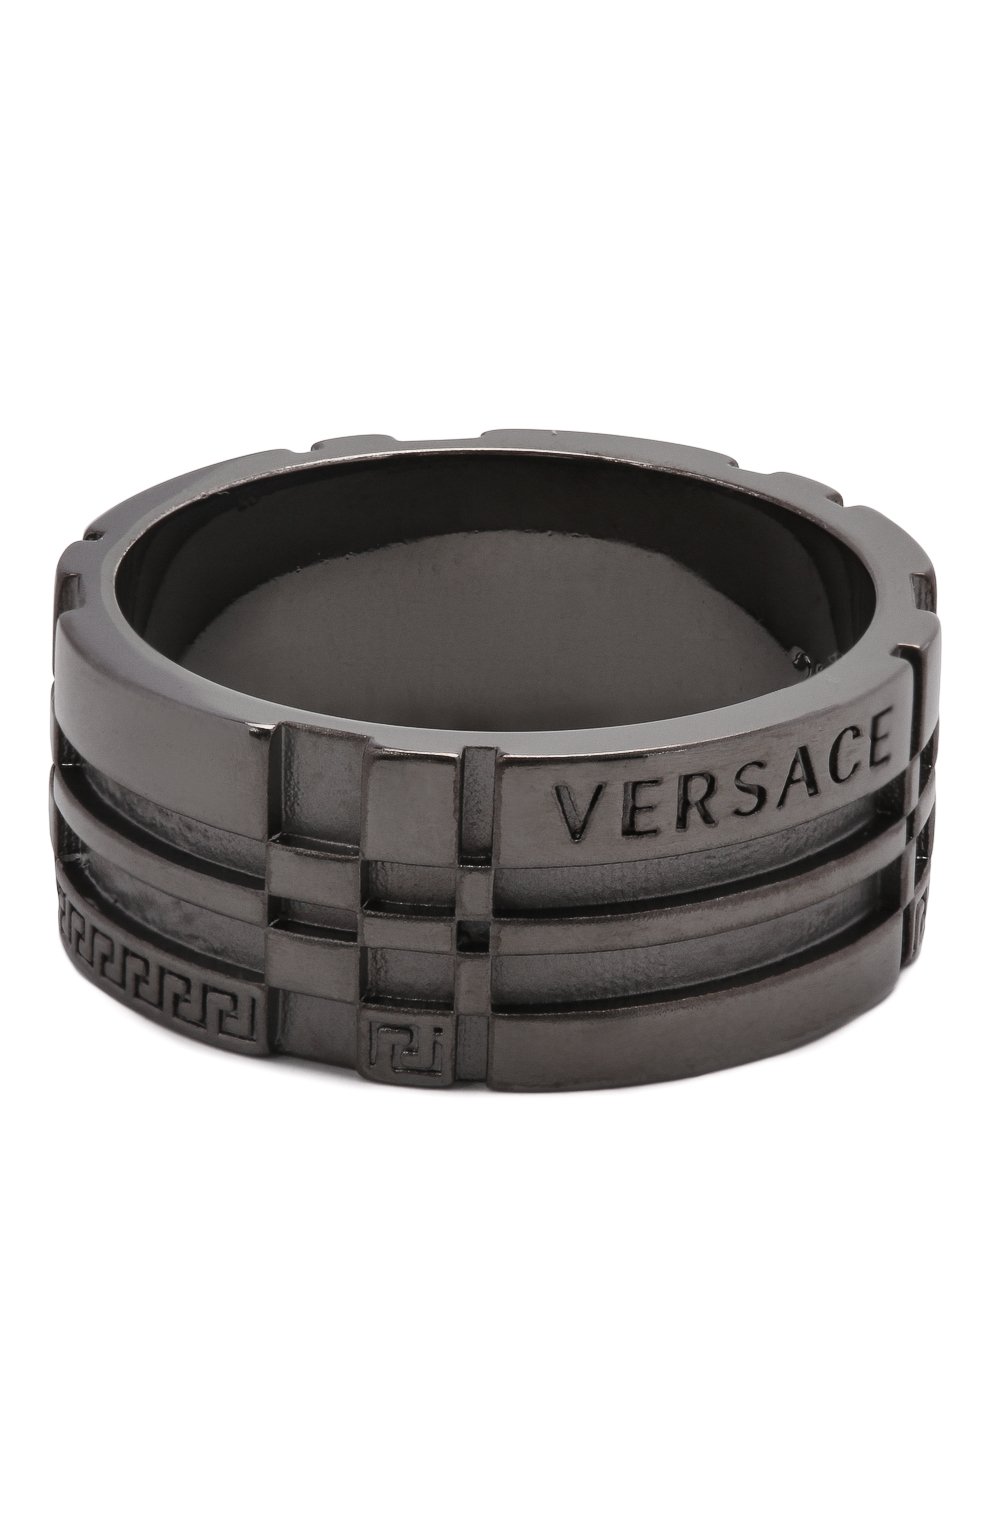 Мужское кольцо VERSACE серебряного цвет а, арт. 1000865/1A00620 | Фото 1 (Материал: Металл)